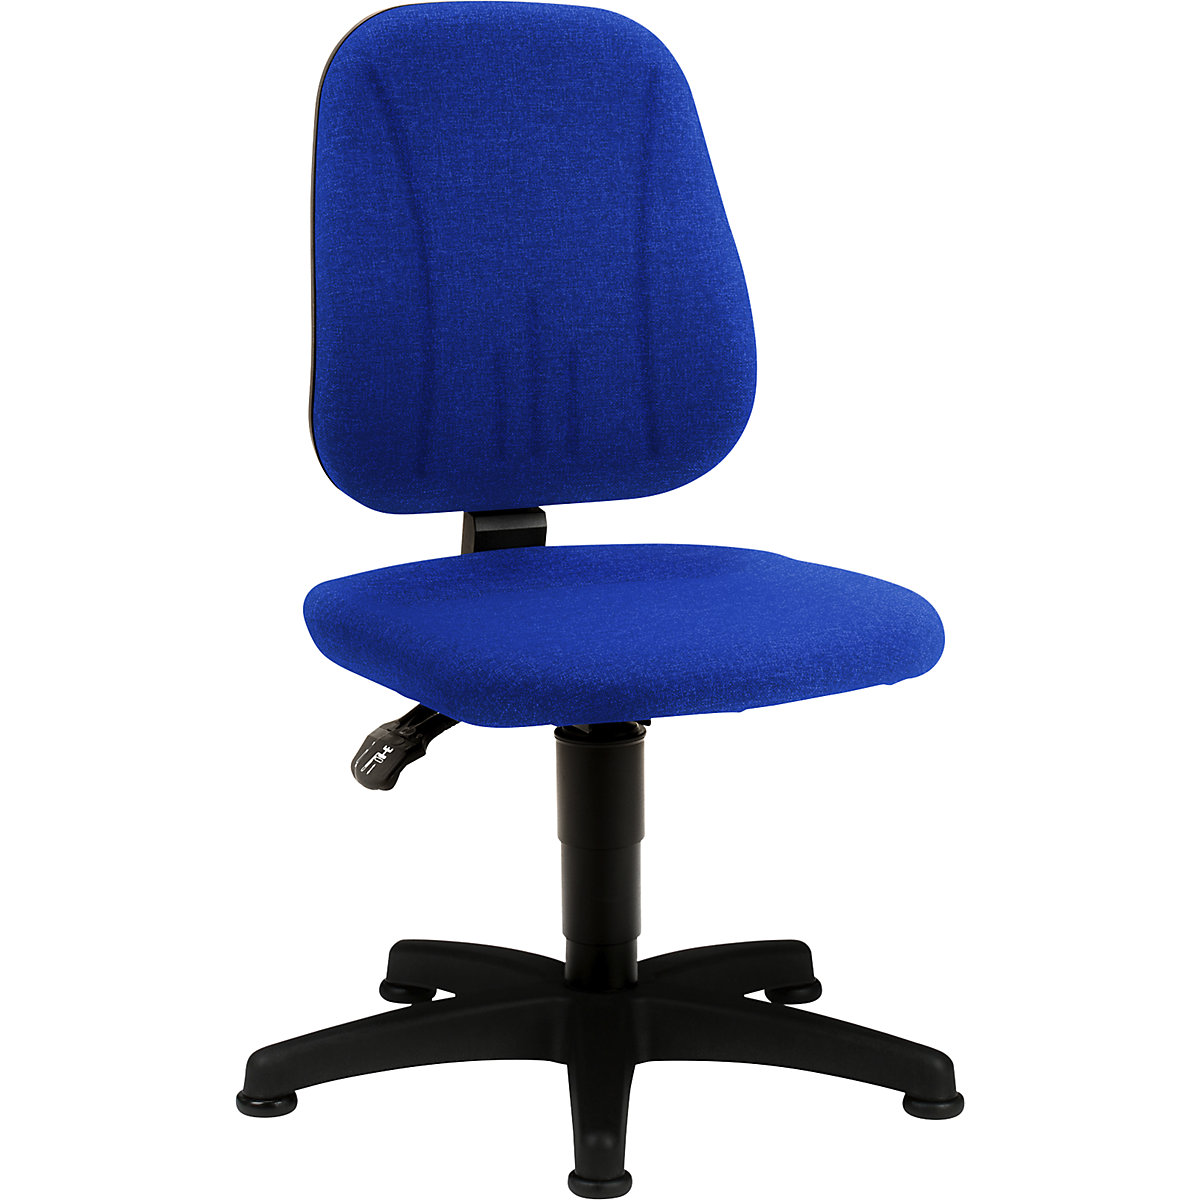 Okretni radni stolac – bimos, s namještanjem visine pomoću plinske opruge, presvlaka od tkanine, u plavoj boji, s podnim vodilicama-15